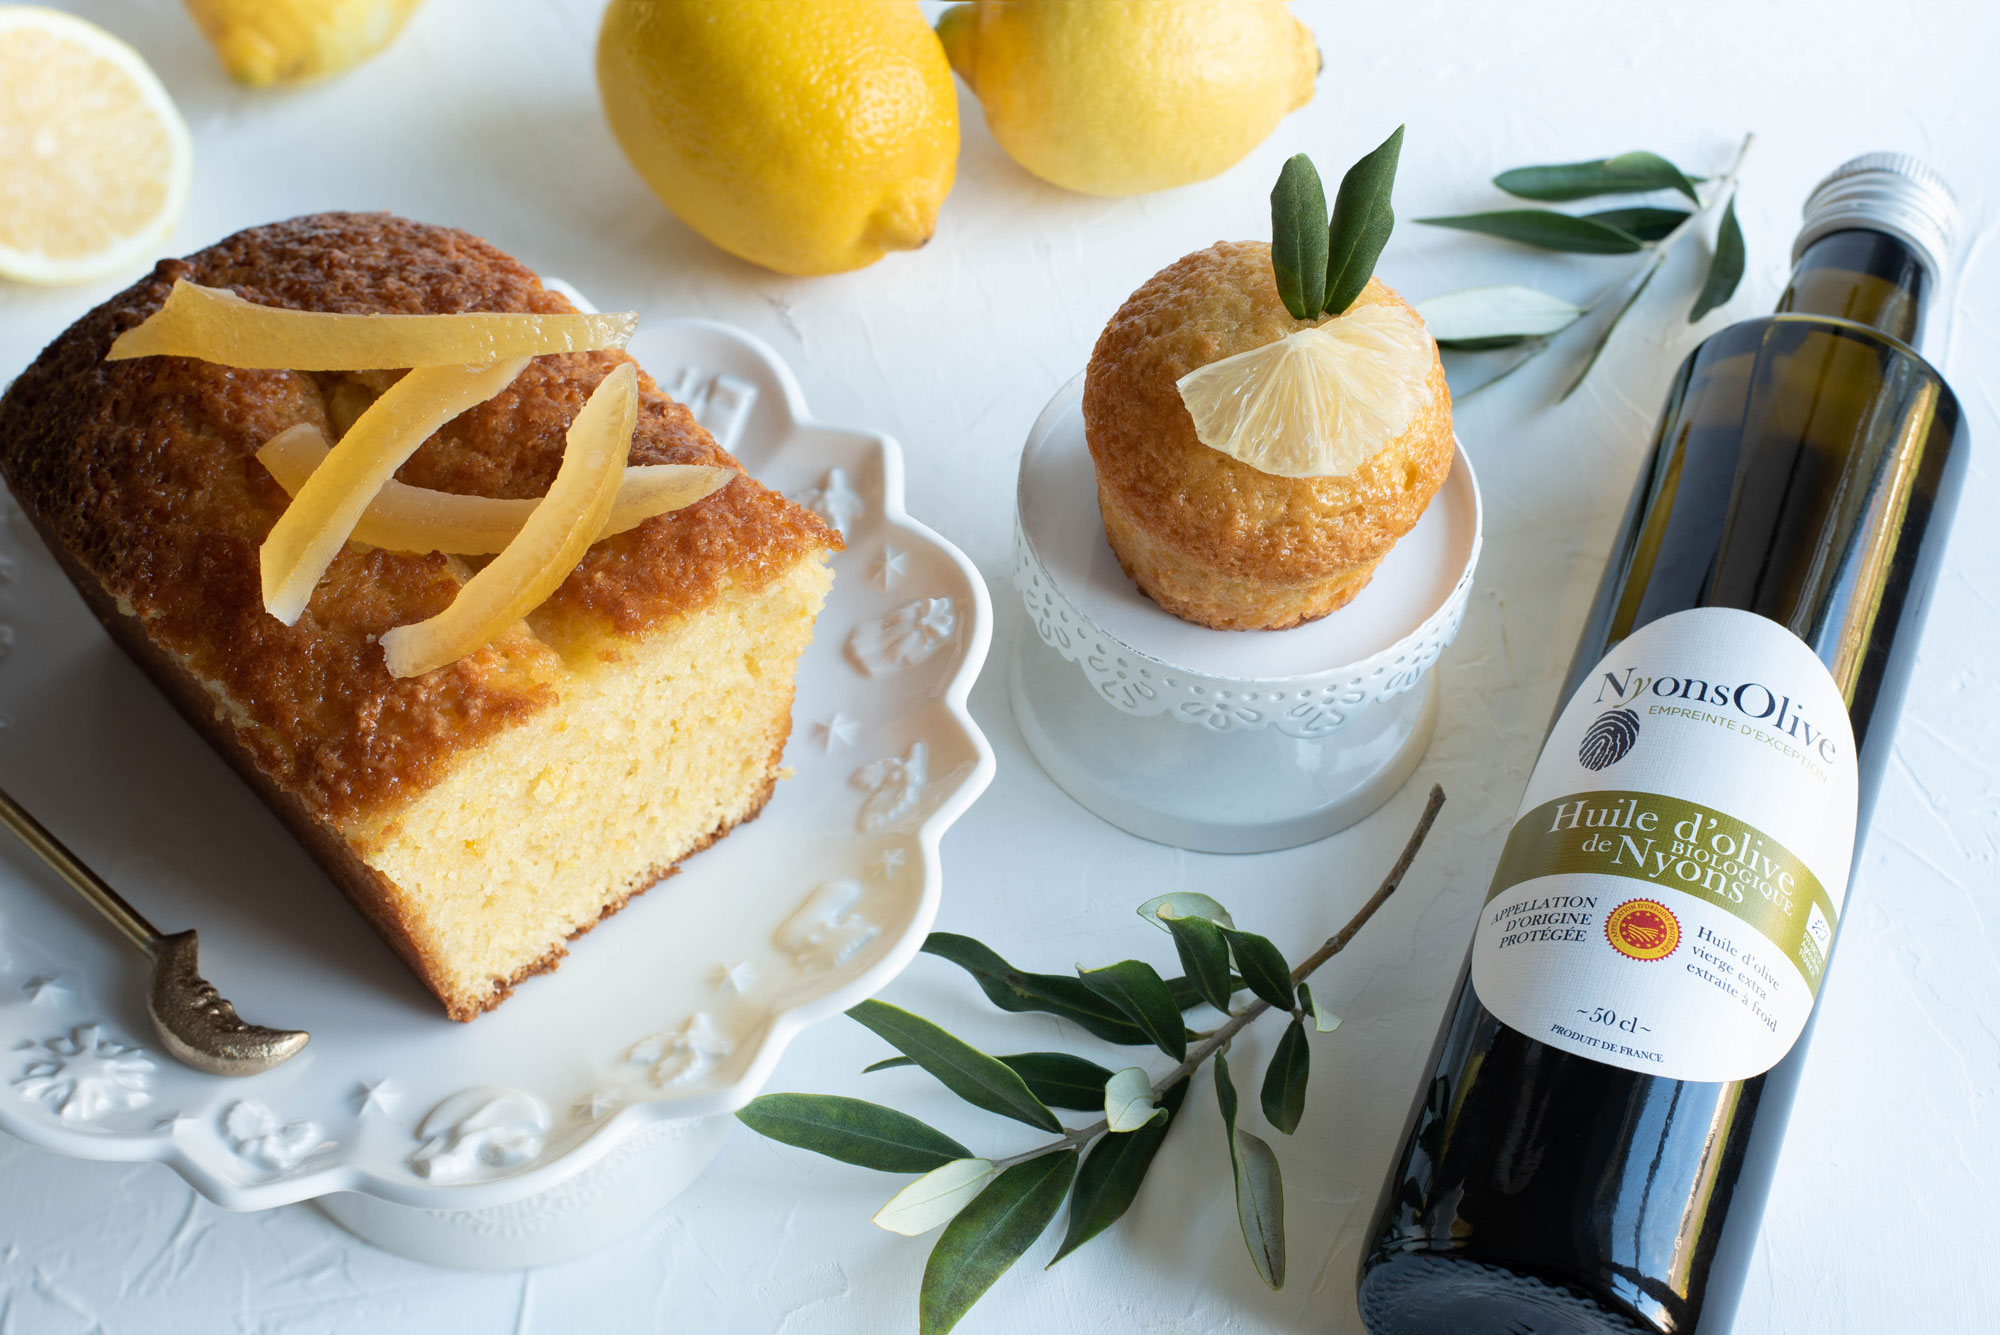 Cake au citron et à l’huile d’olive de Nyons biologique NyonsOlive